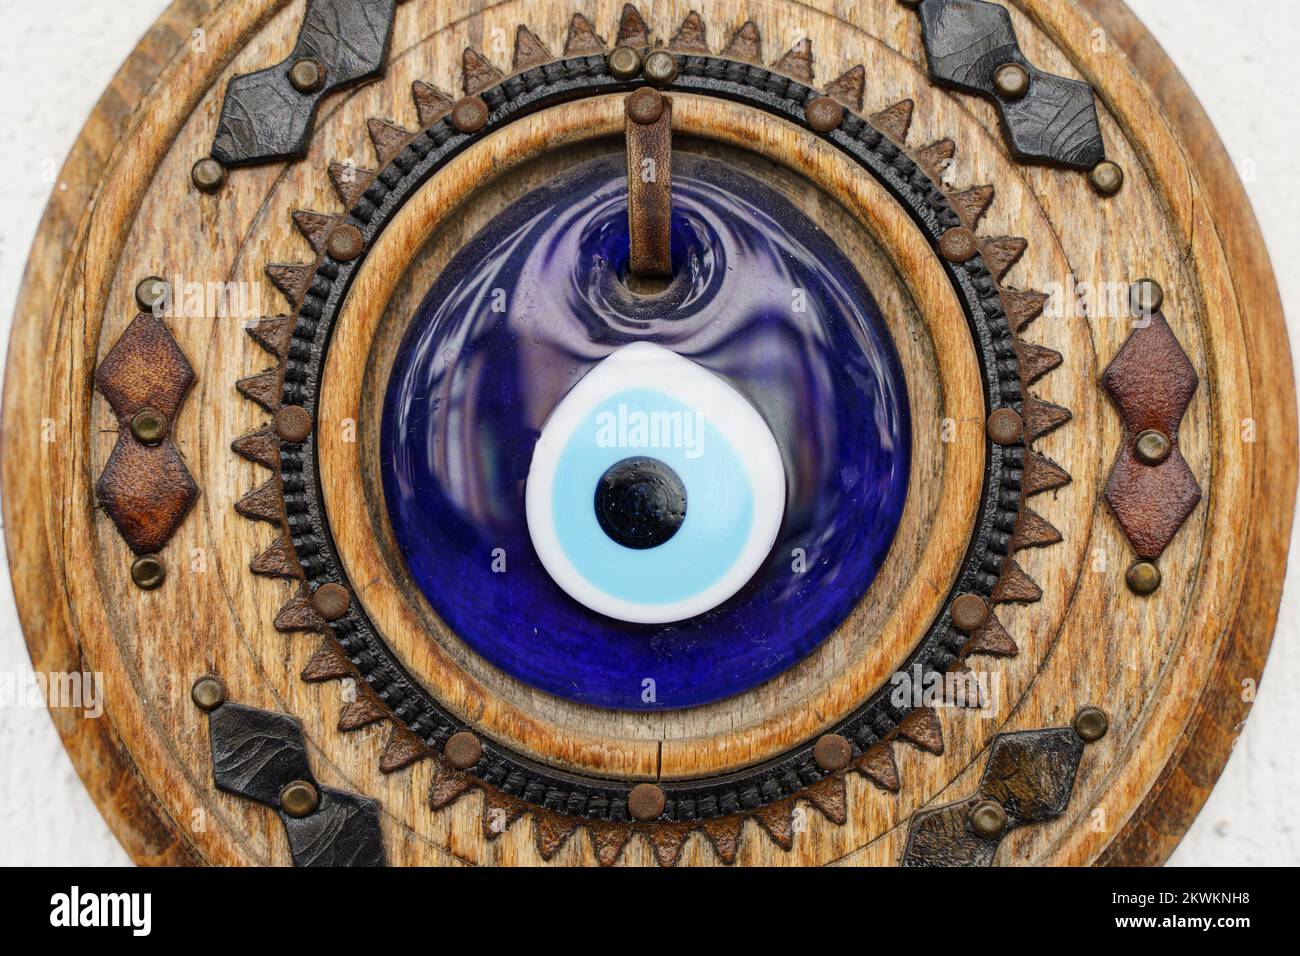 Occhio blu turco. Tradizionale decorazione nazionale turca e amuleto per la buona fortuna e la protezione. L'occhio di vetro blu è usato nelle decorazioni interne. Foto di alta qualità Foto Stock